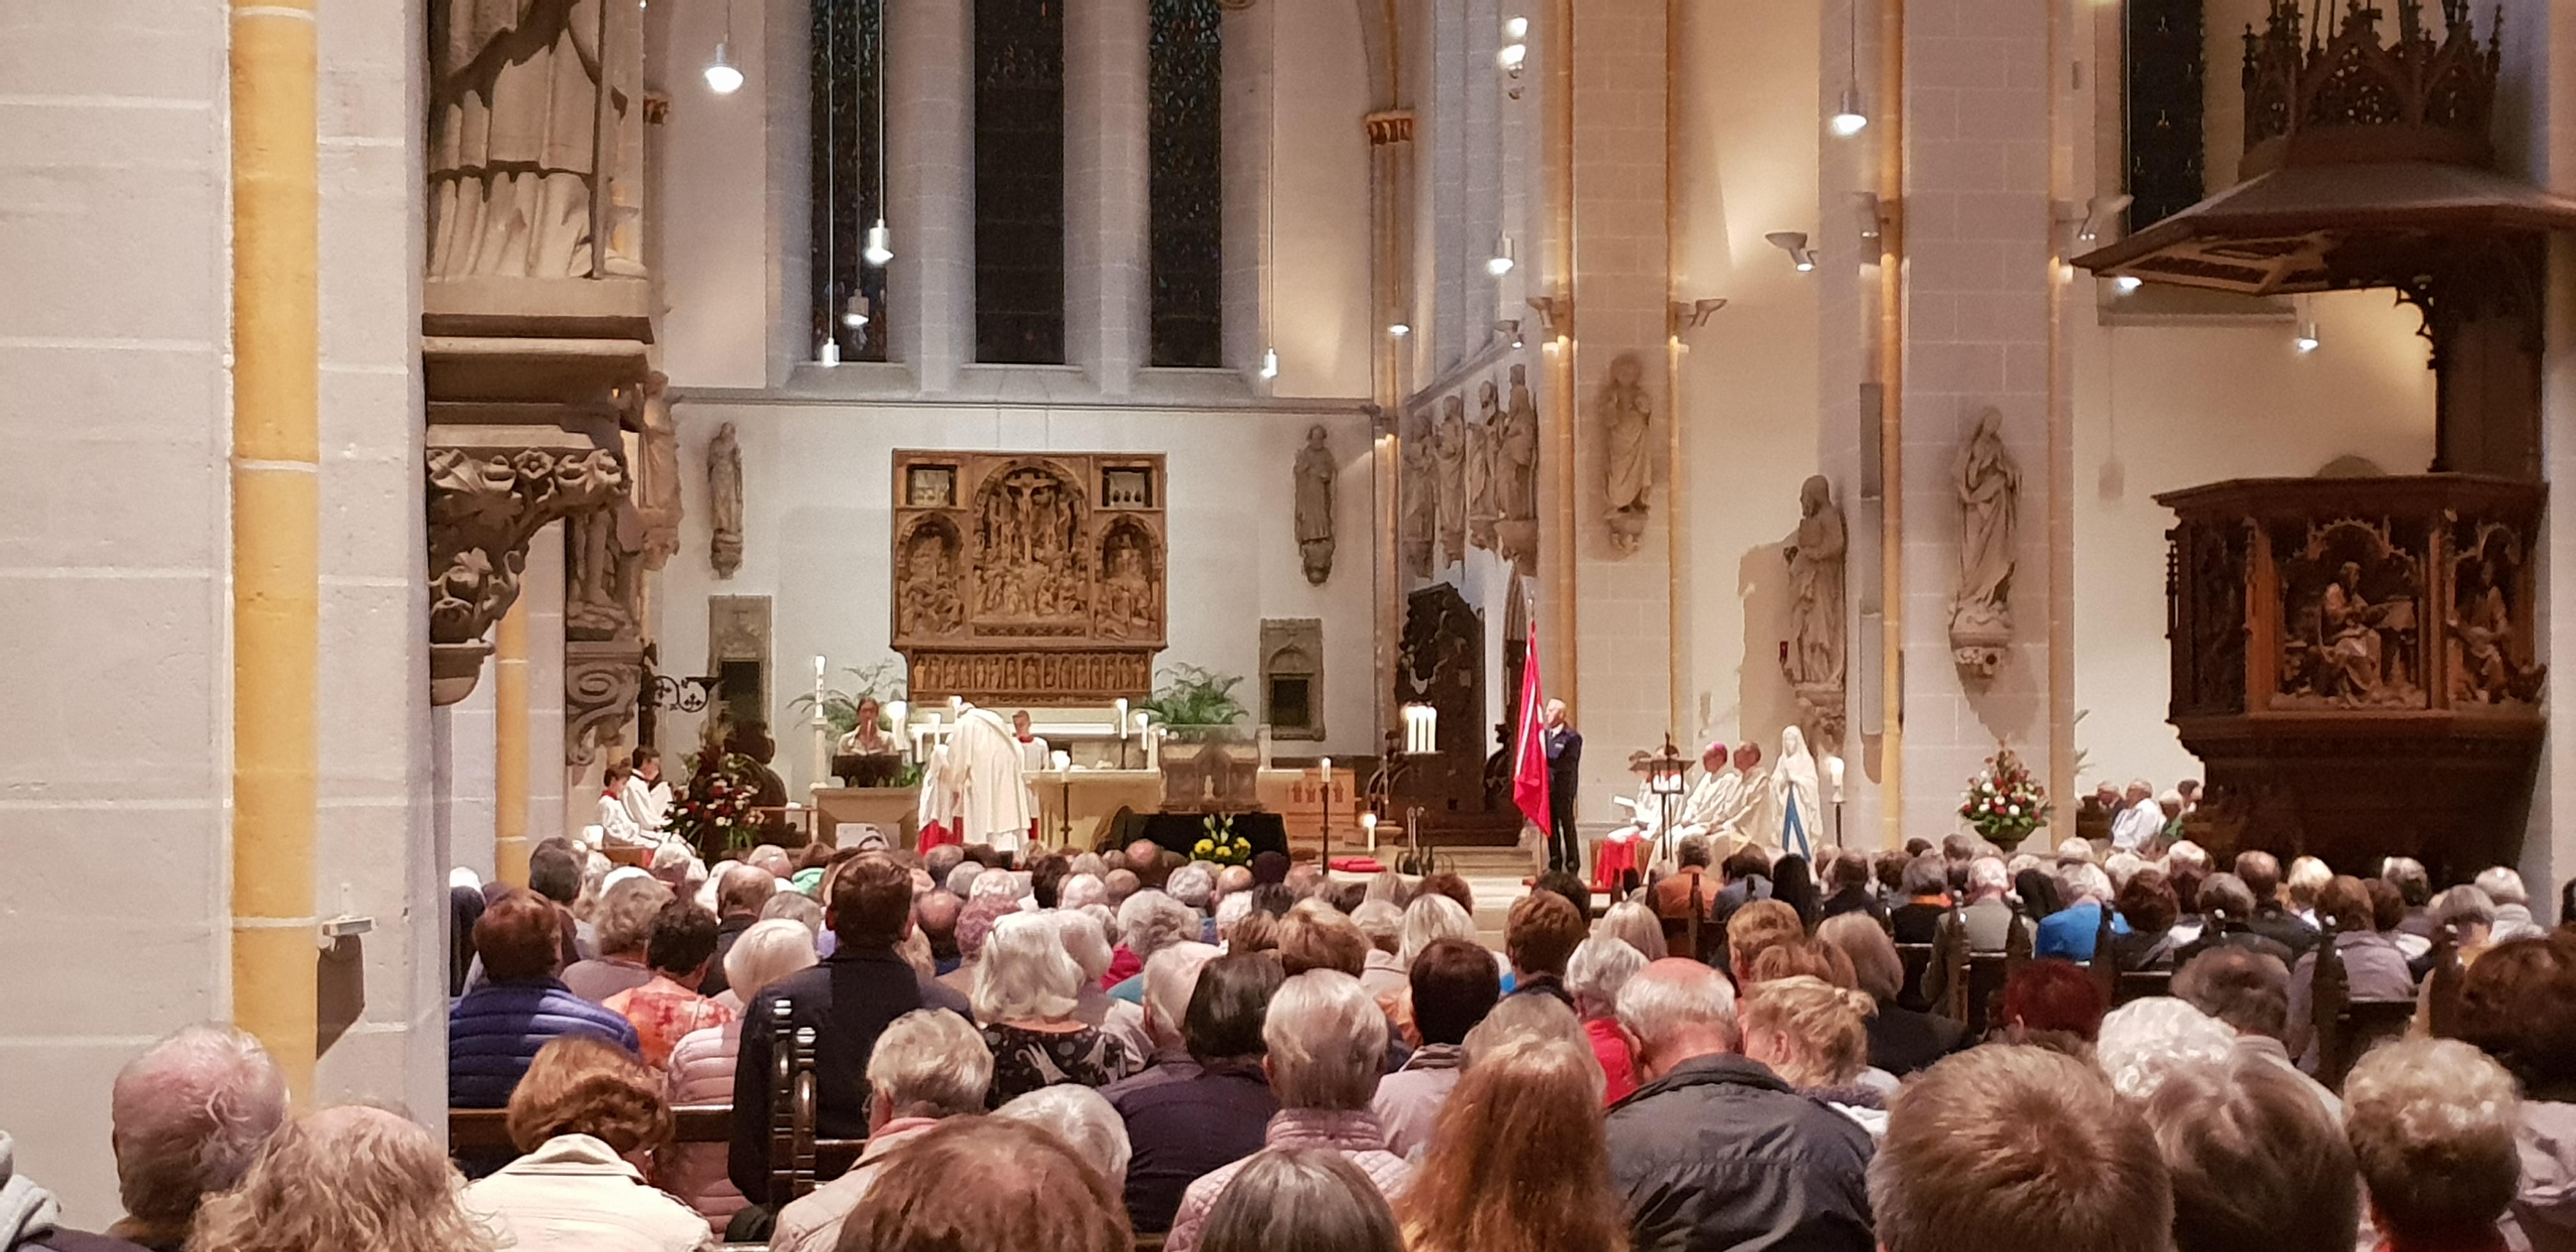 Messe mit den Maltesern in St. Johann - Schrein der Heligen Bernadette in der Kirche St. Johann in Osnabrück 